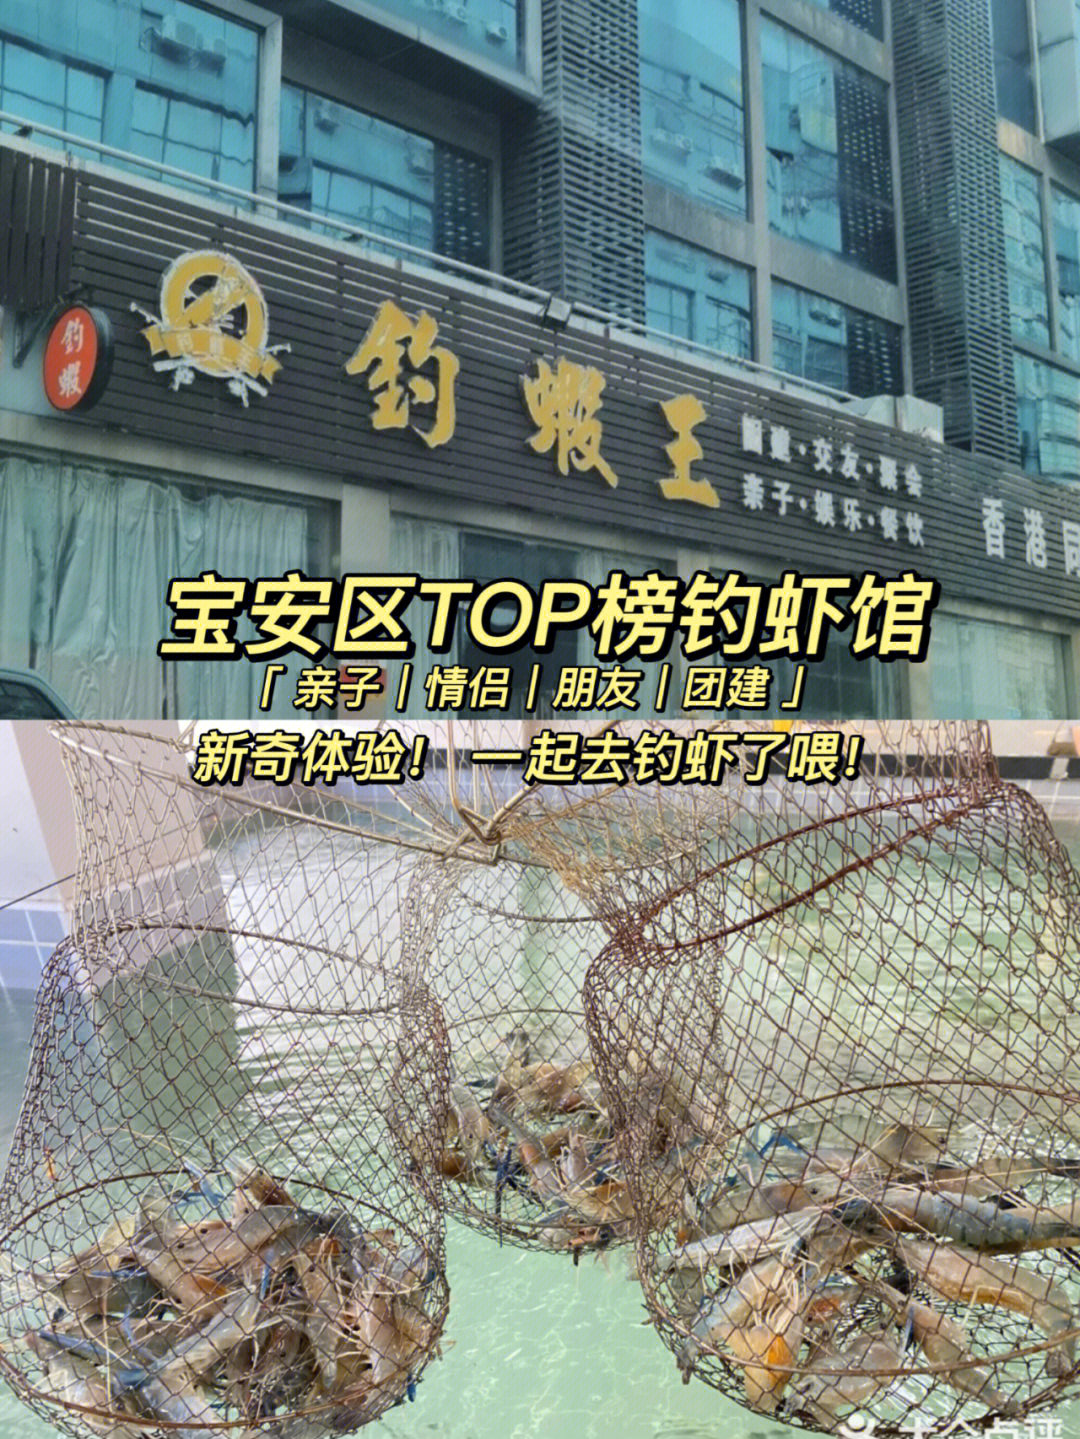 深圳还有比这家更好的钓虾馆吗7175